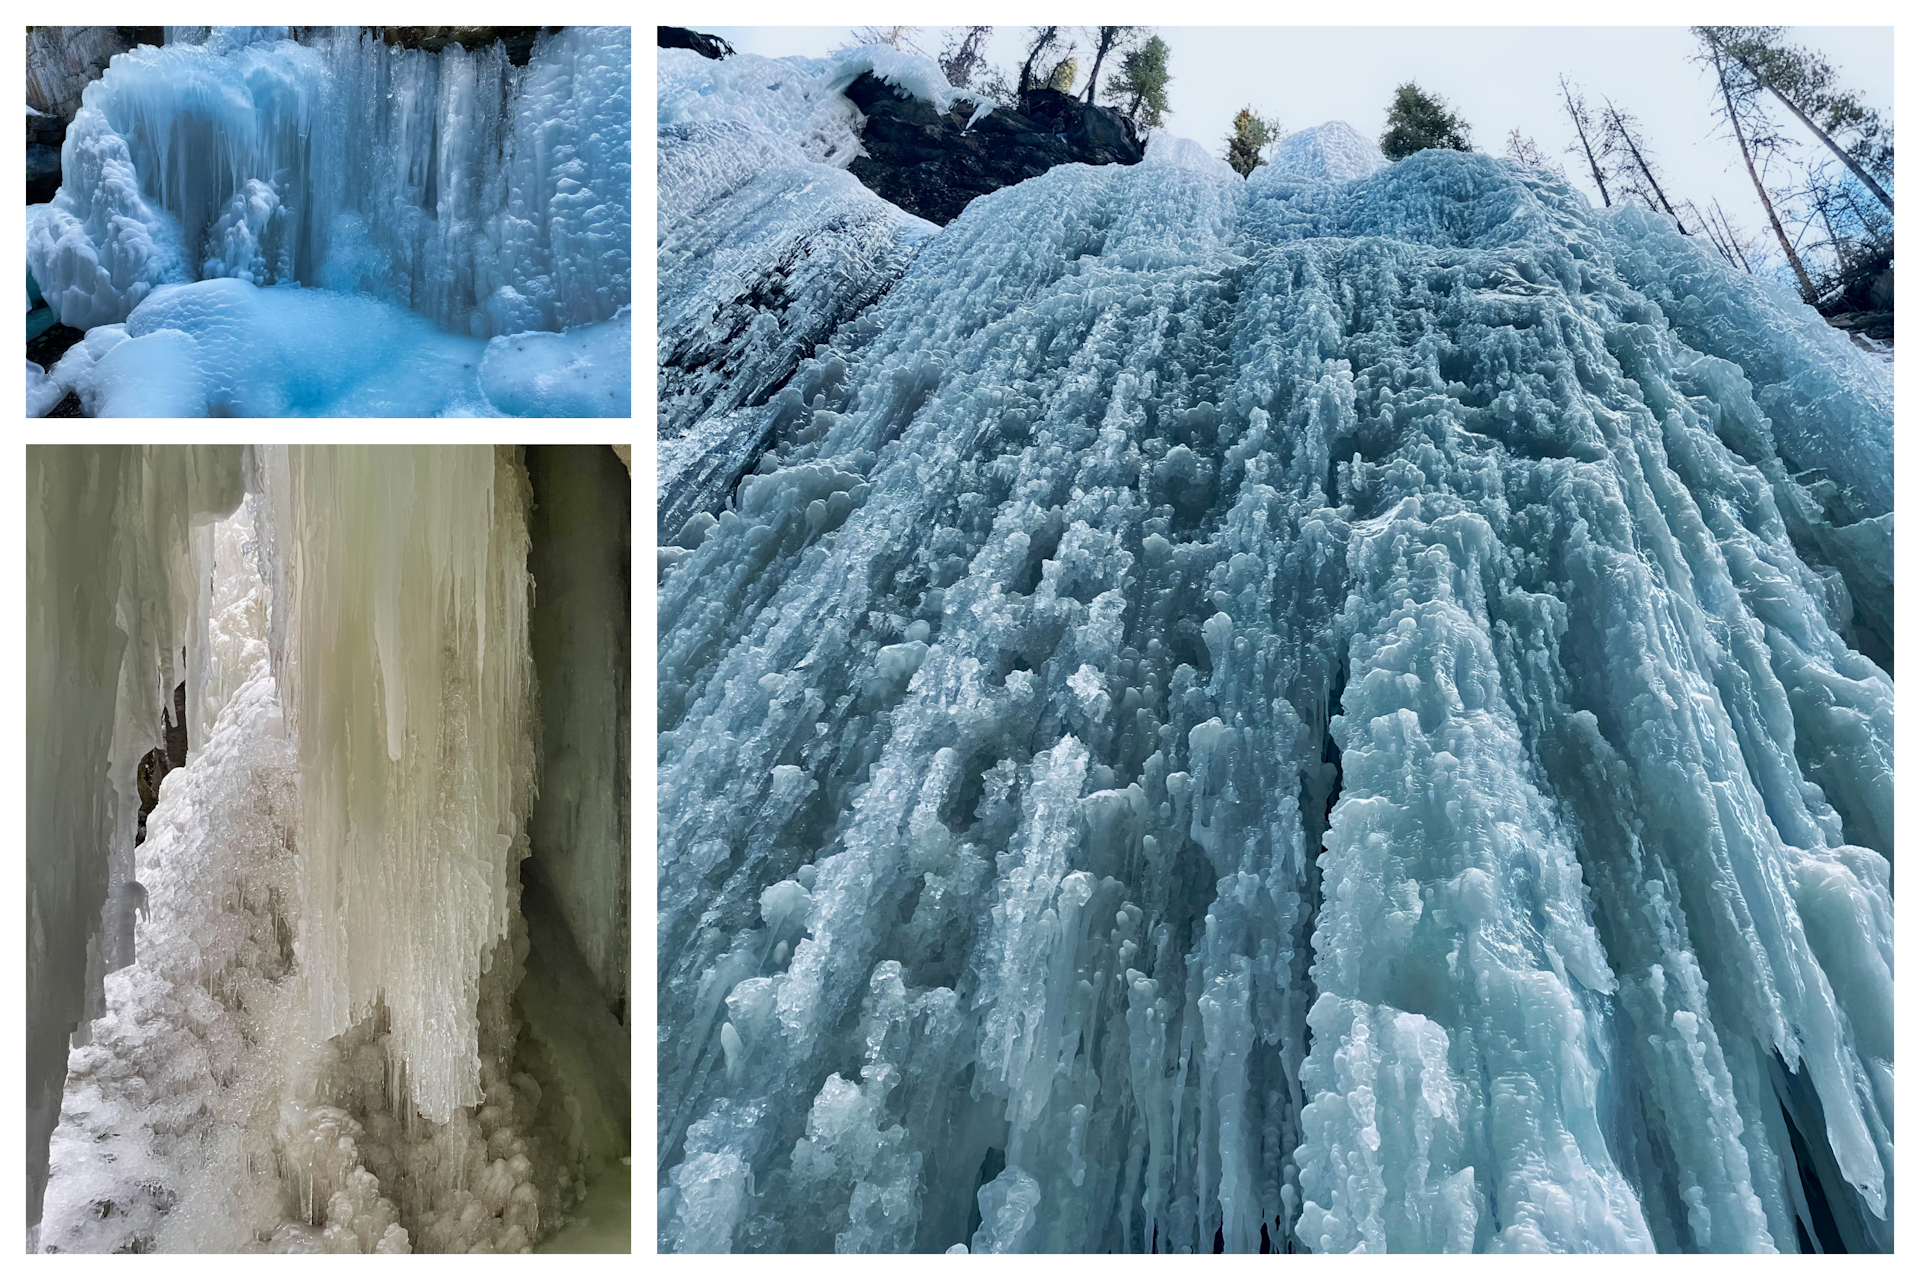 Alberta's frozen waterfalls